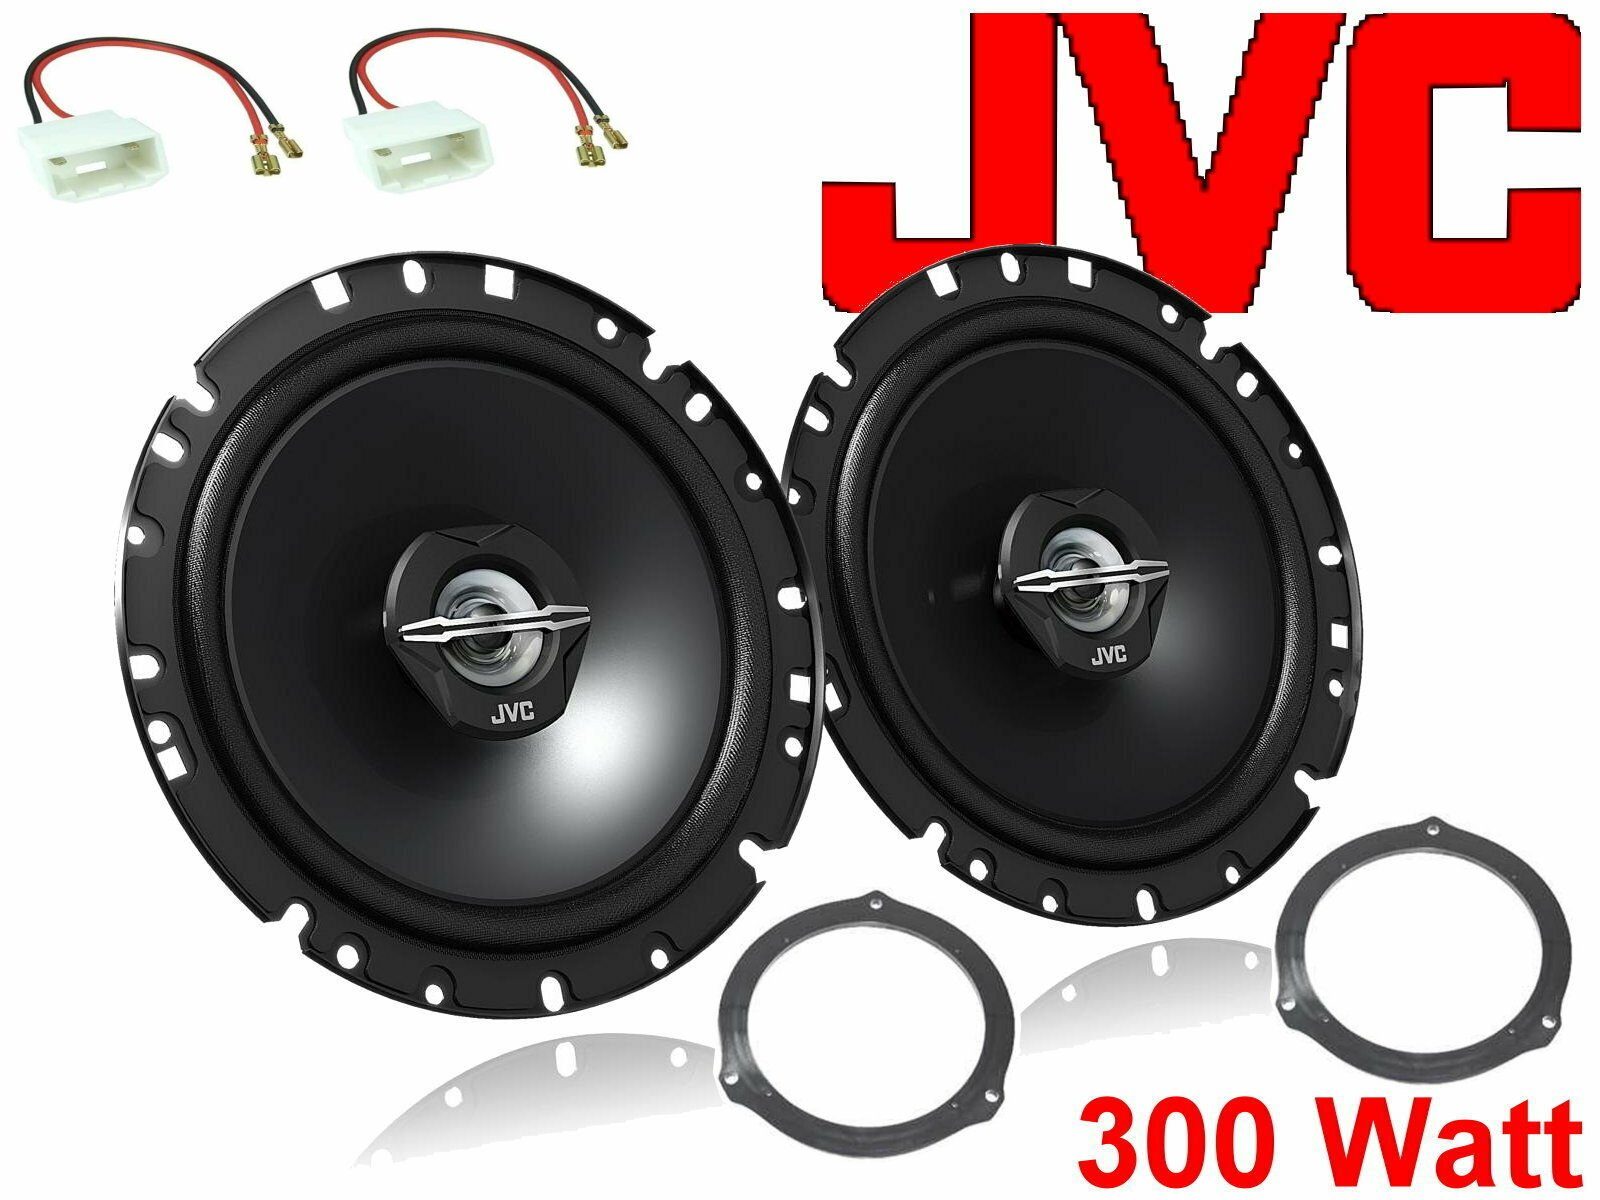 DSX JVC passend für Ford Mondeo Bj 06/07 - 2019 Lautsp Auto-Lautsprecher (30 W)